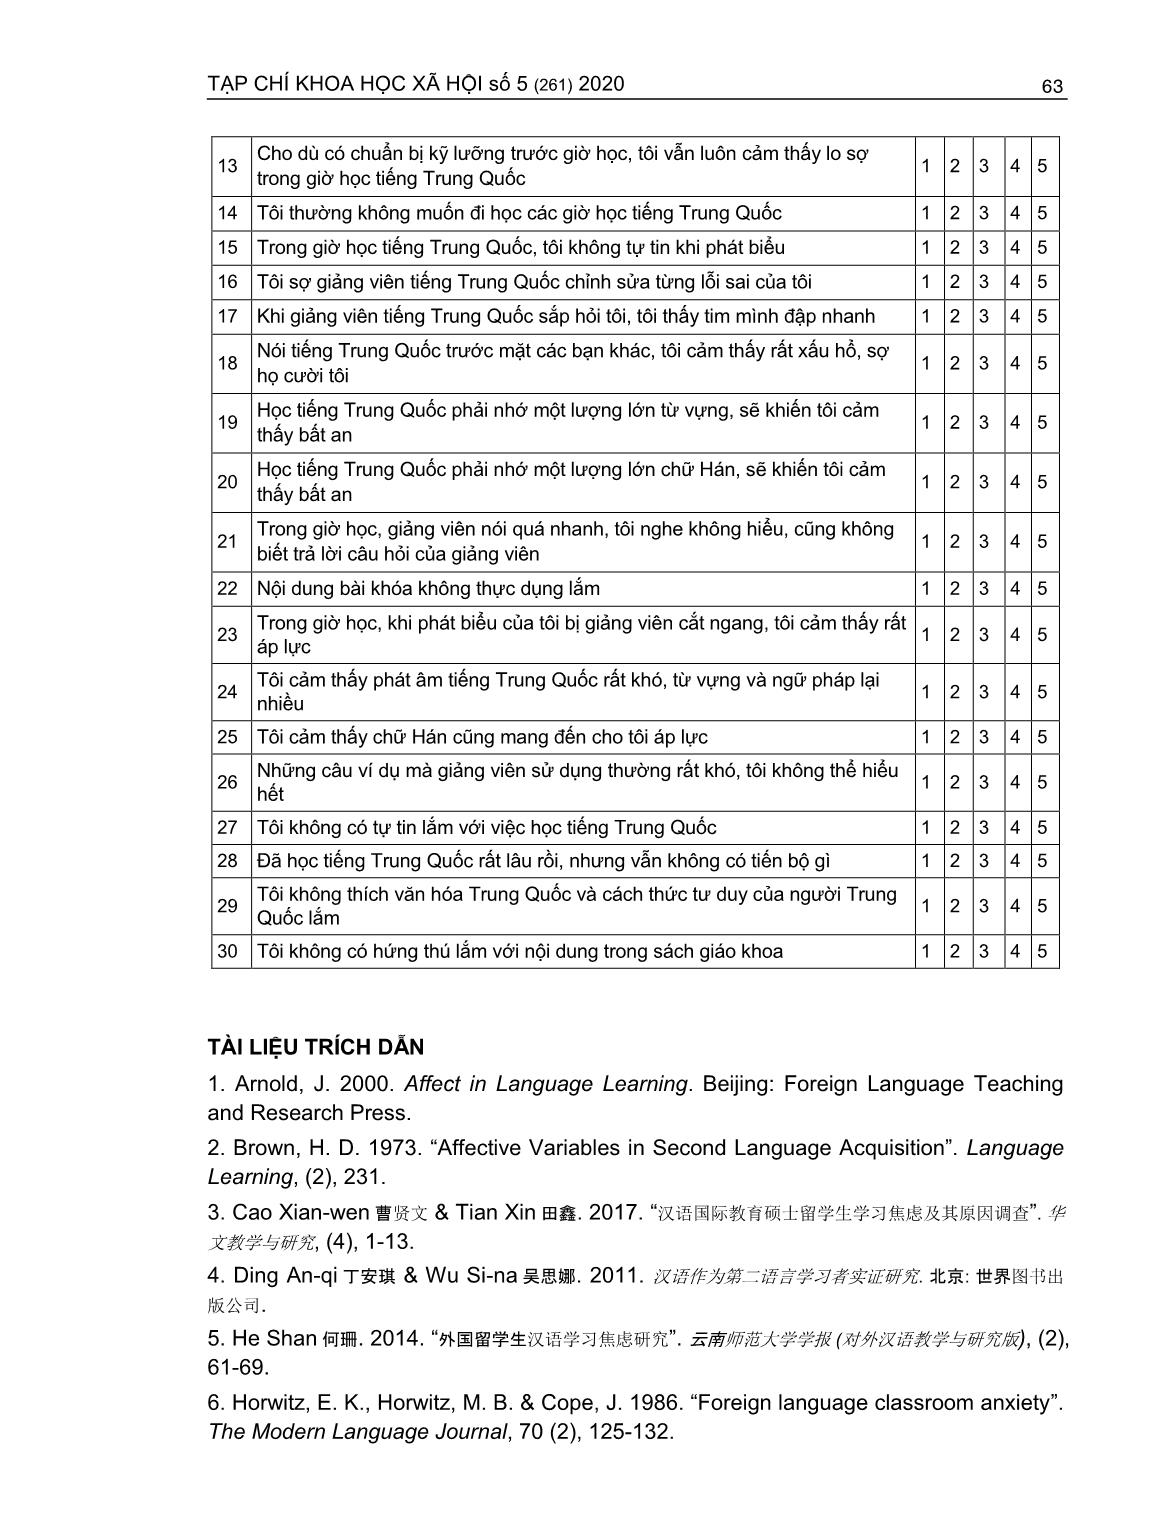 Lo lắng trong học tập tiếng Trung Quốc - Ngoại ngữ thứ hai của sinh viên ngành Ngôn ngữ anh (Trường hợp Trường Đại học Ngân hàng thành phố Hồ Chí Minh) trang 9